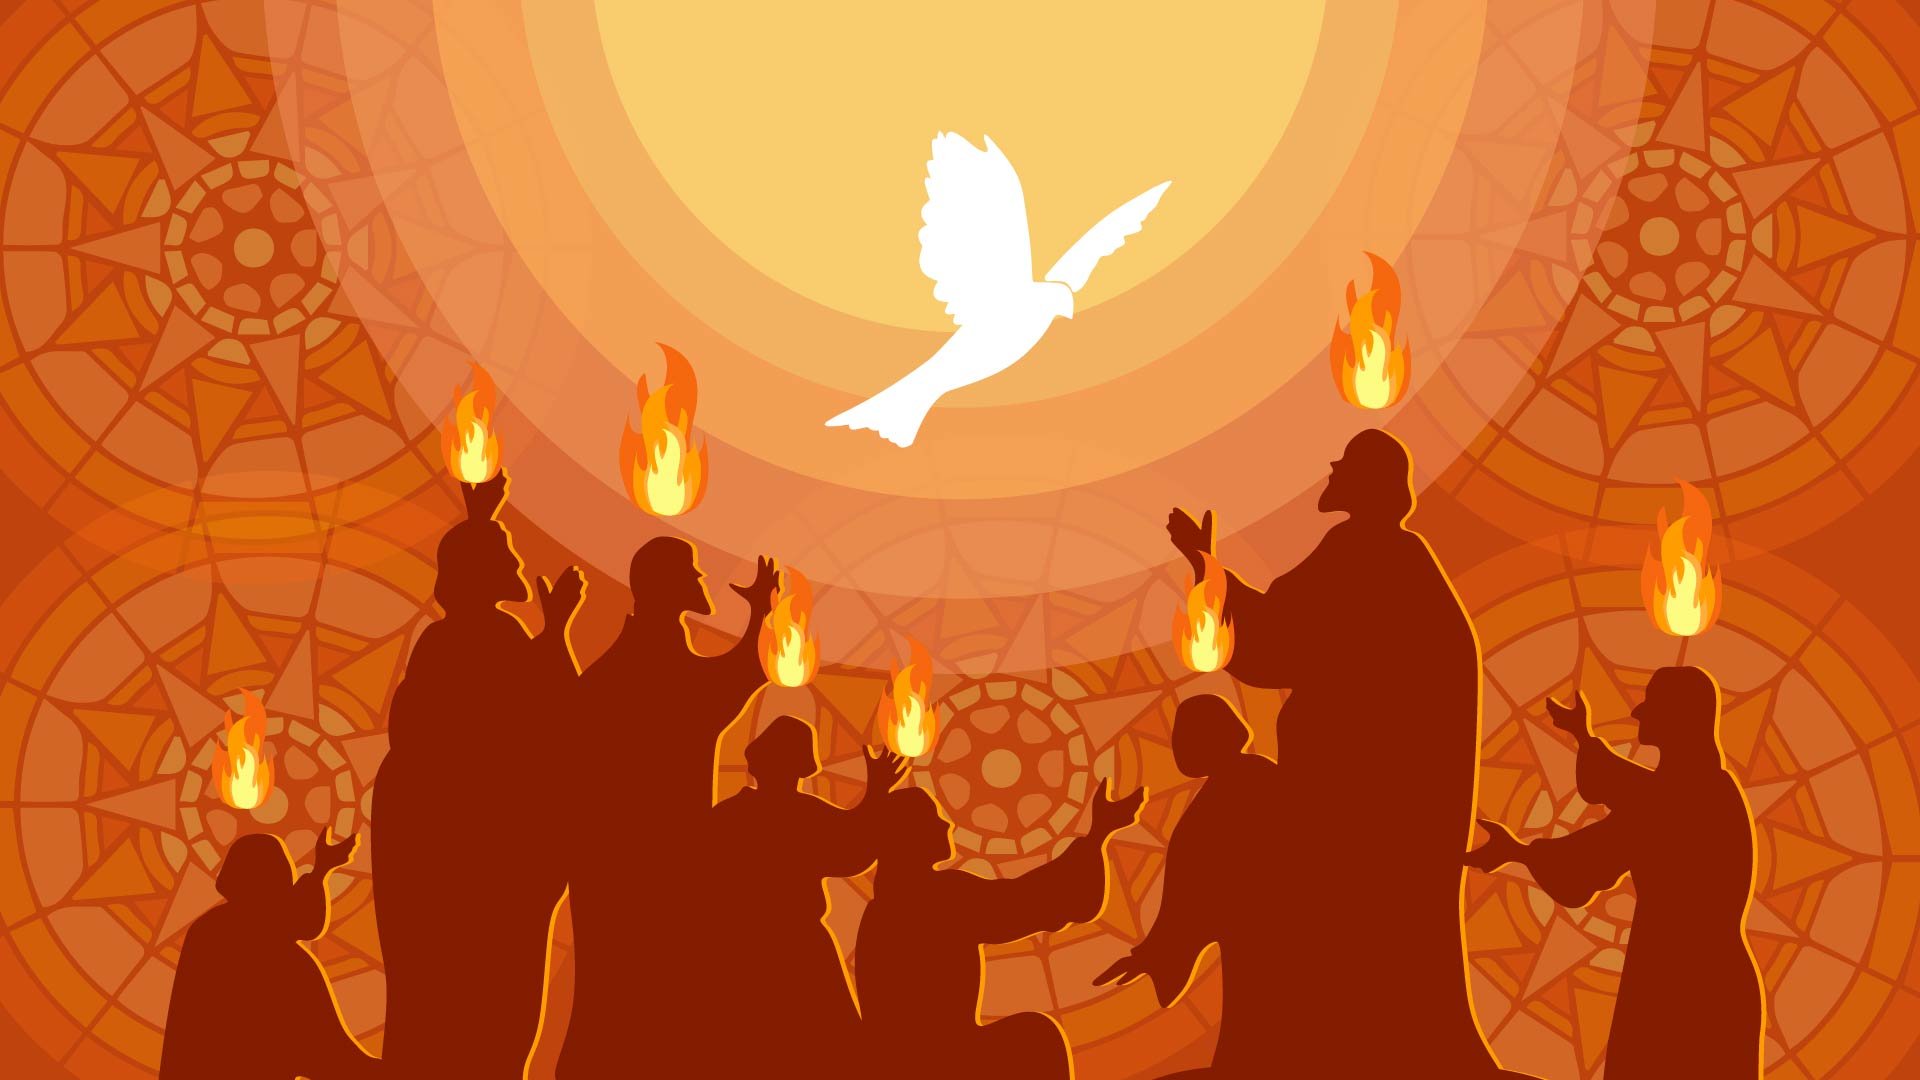 Pentecost Image Background in PDF, Illustrator, PSD, EPS, SVG, JPG, PNG